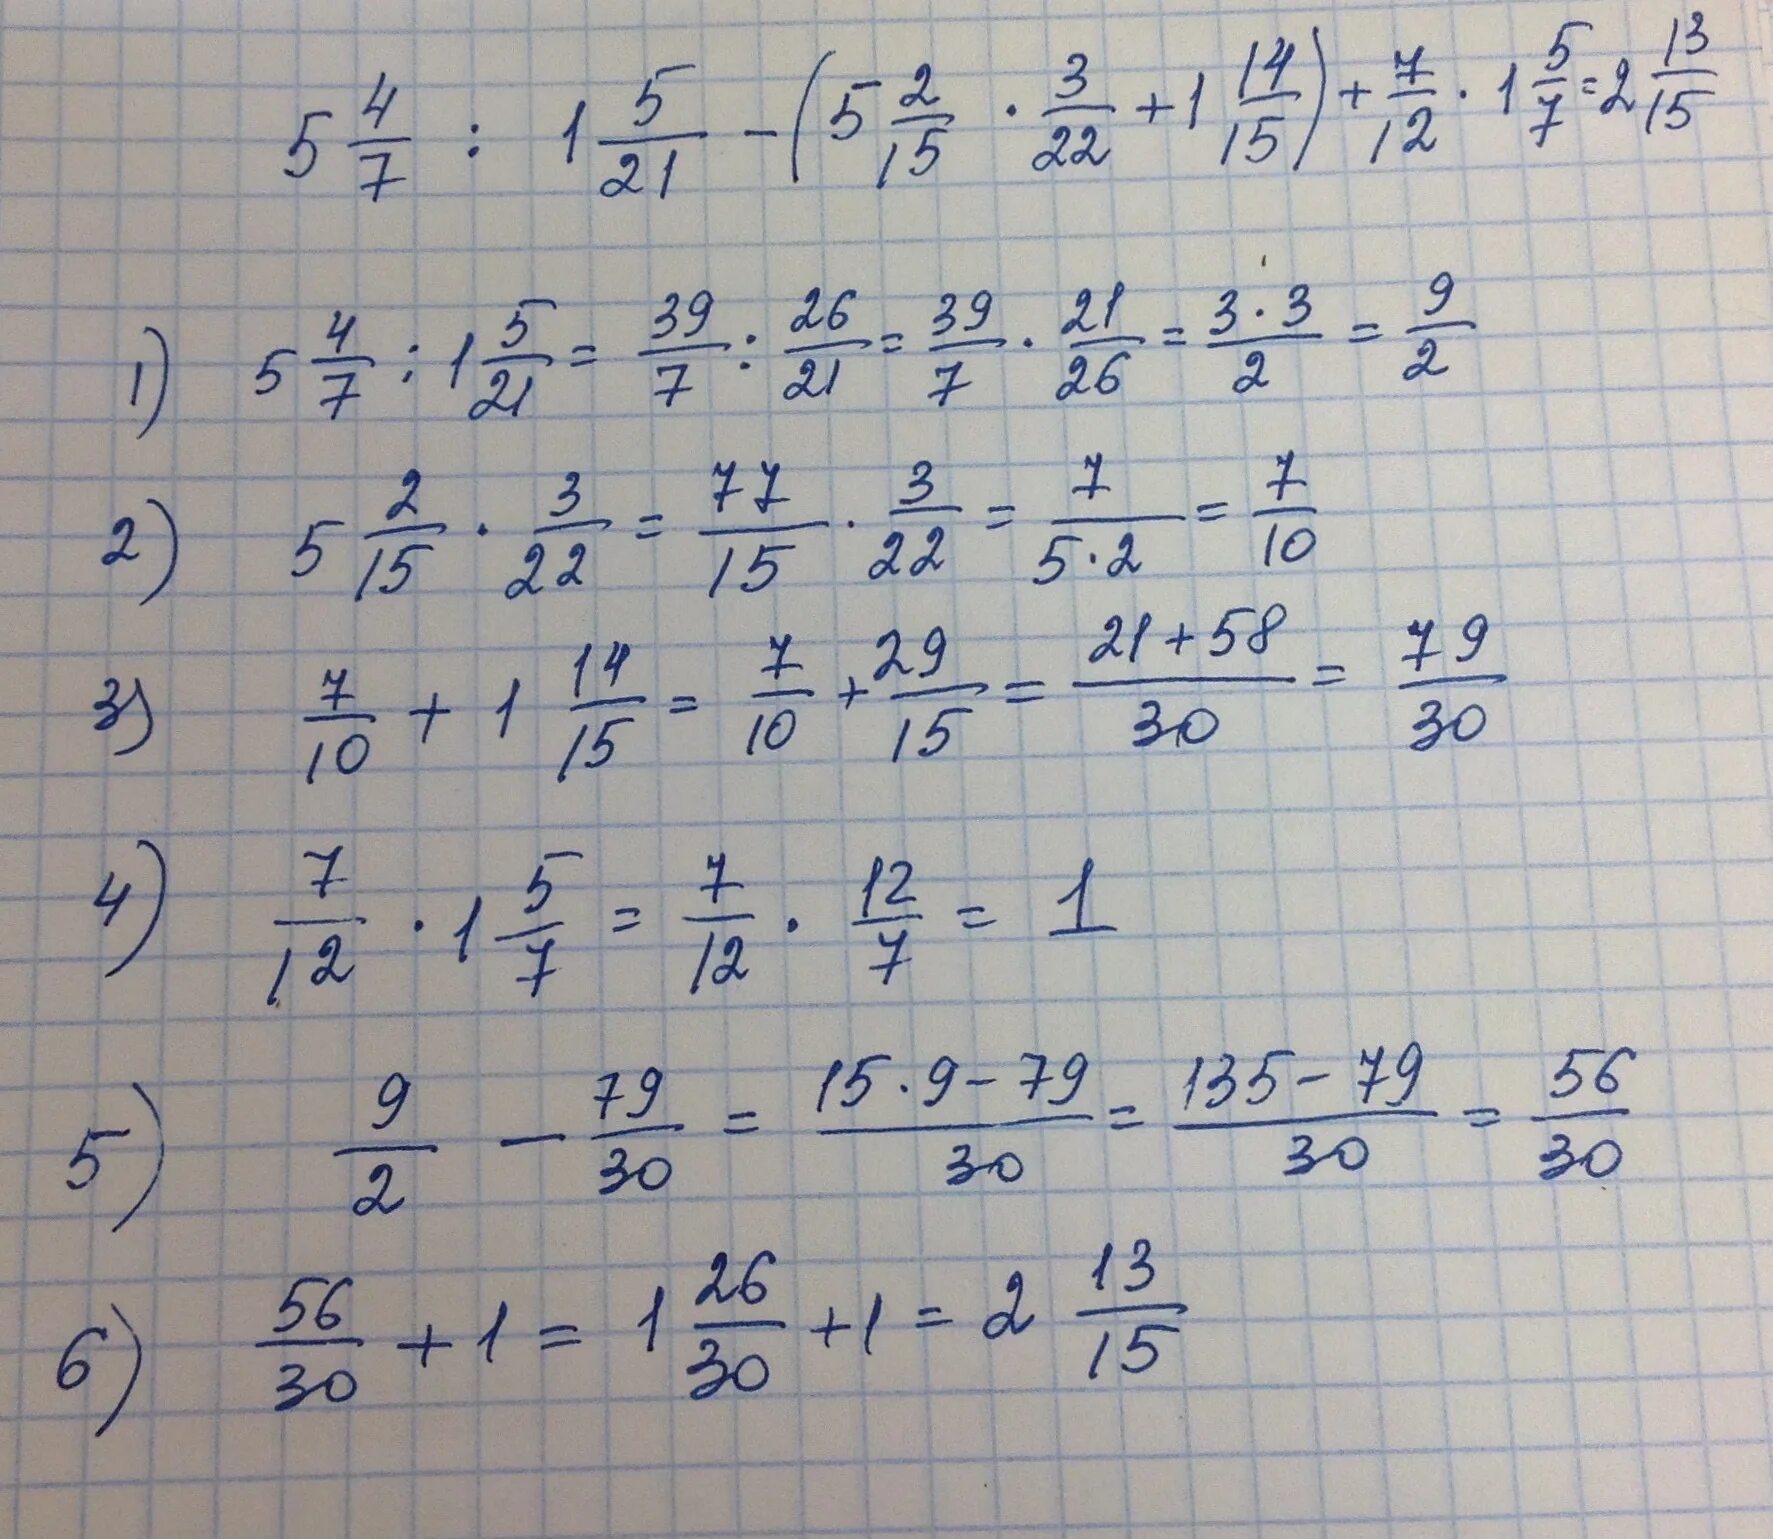 3 9 4 8 14 4 решение. НВКУ 49-12-7. 5 × 12/15 +(5,6-11,2):1, 6/5. 5 1/3×2 1/4÷7 1/5 ответ. (5/6+2 3/4):4 7/9*2 2/3-1 2/3.